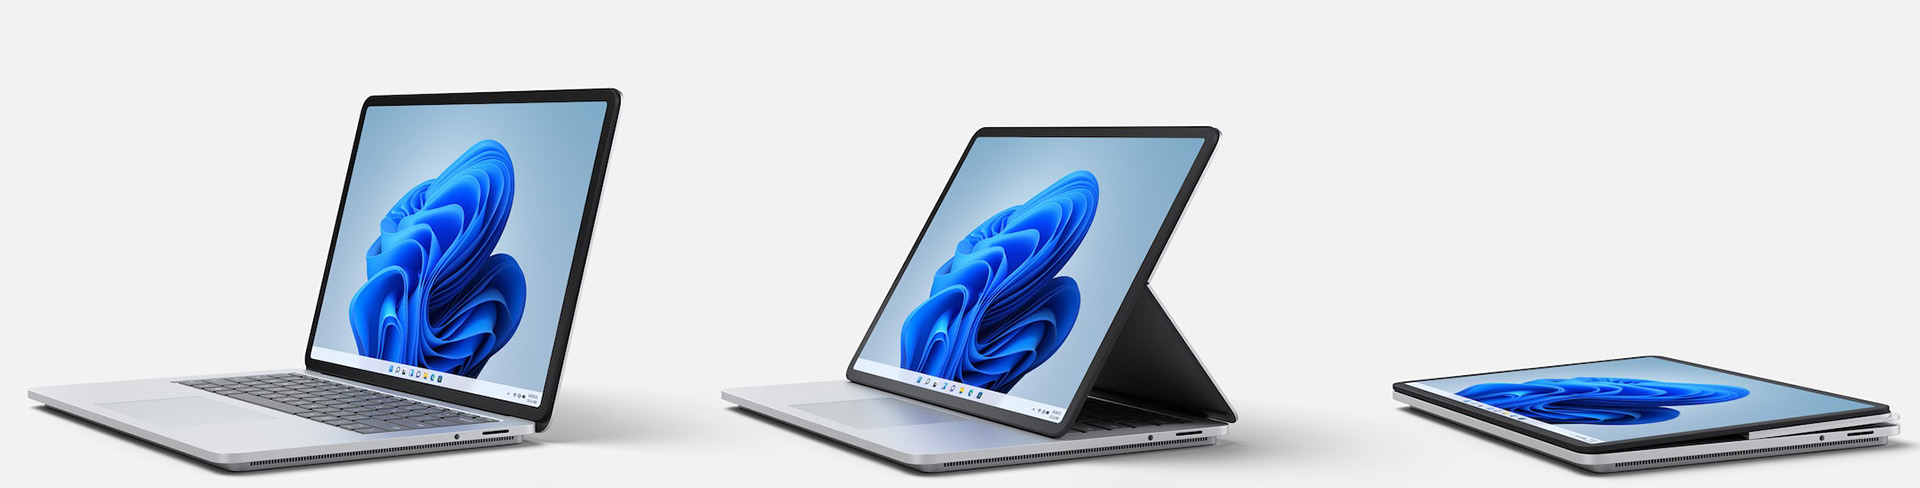 Surface laptop studio platinum